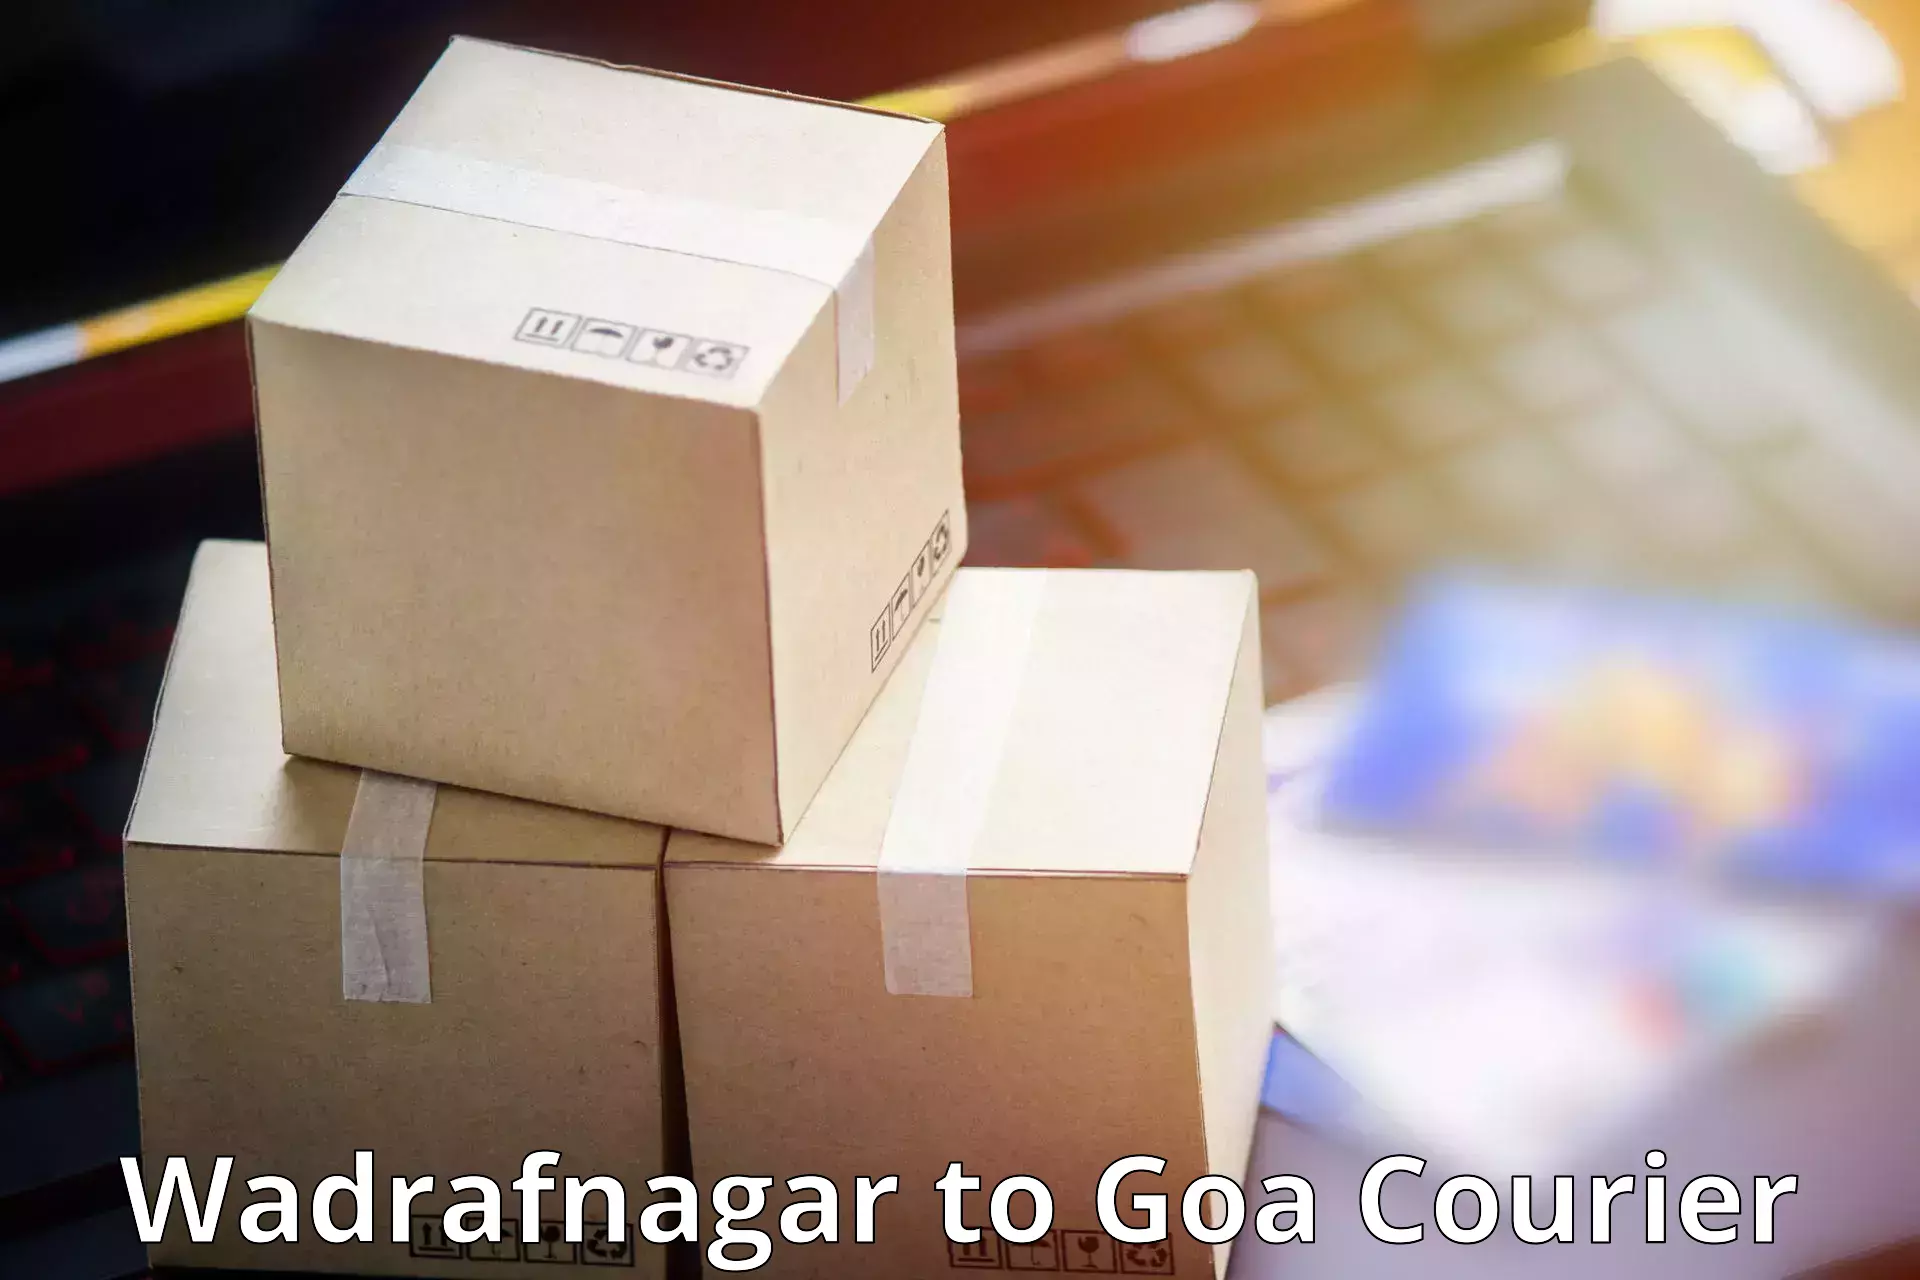 Supply chain efficiency Wadrafnagar to South Goa